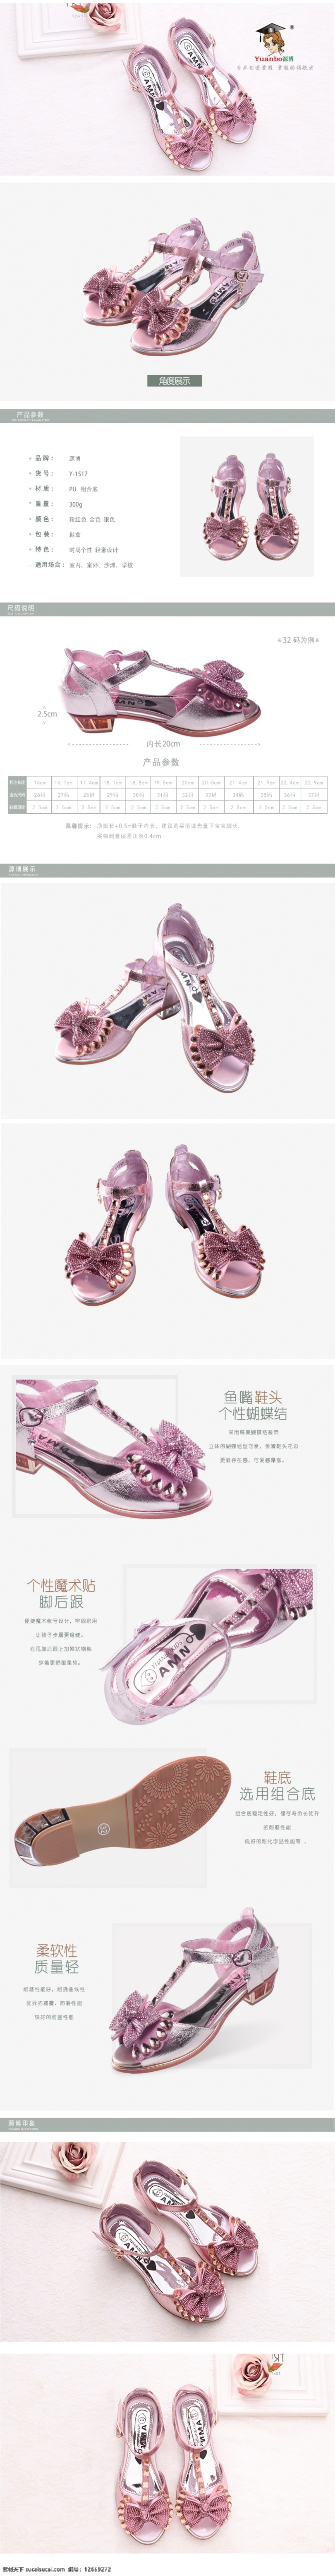 鞋子详情 详情 粉色 简单 白色